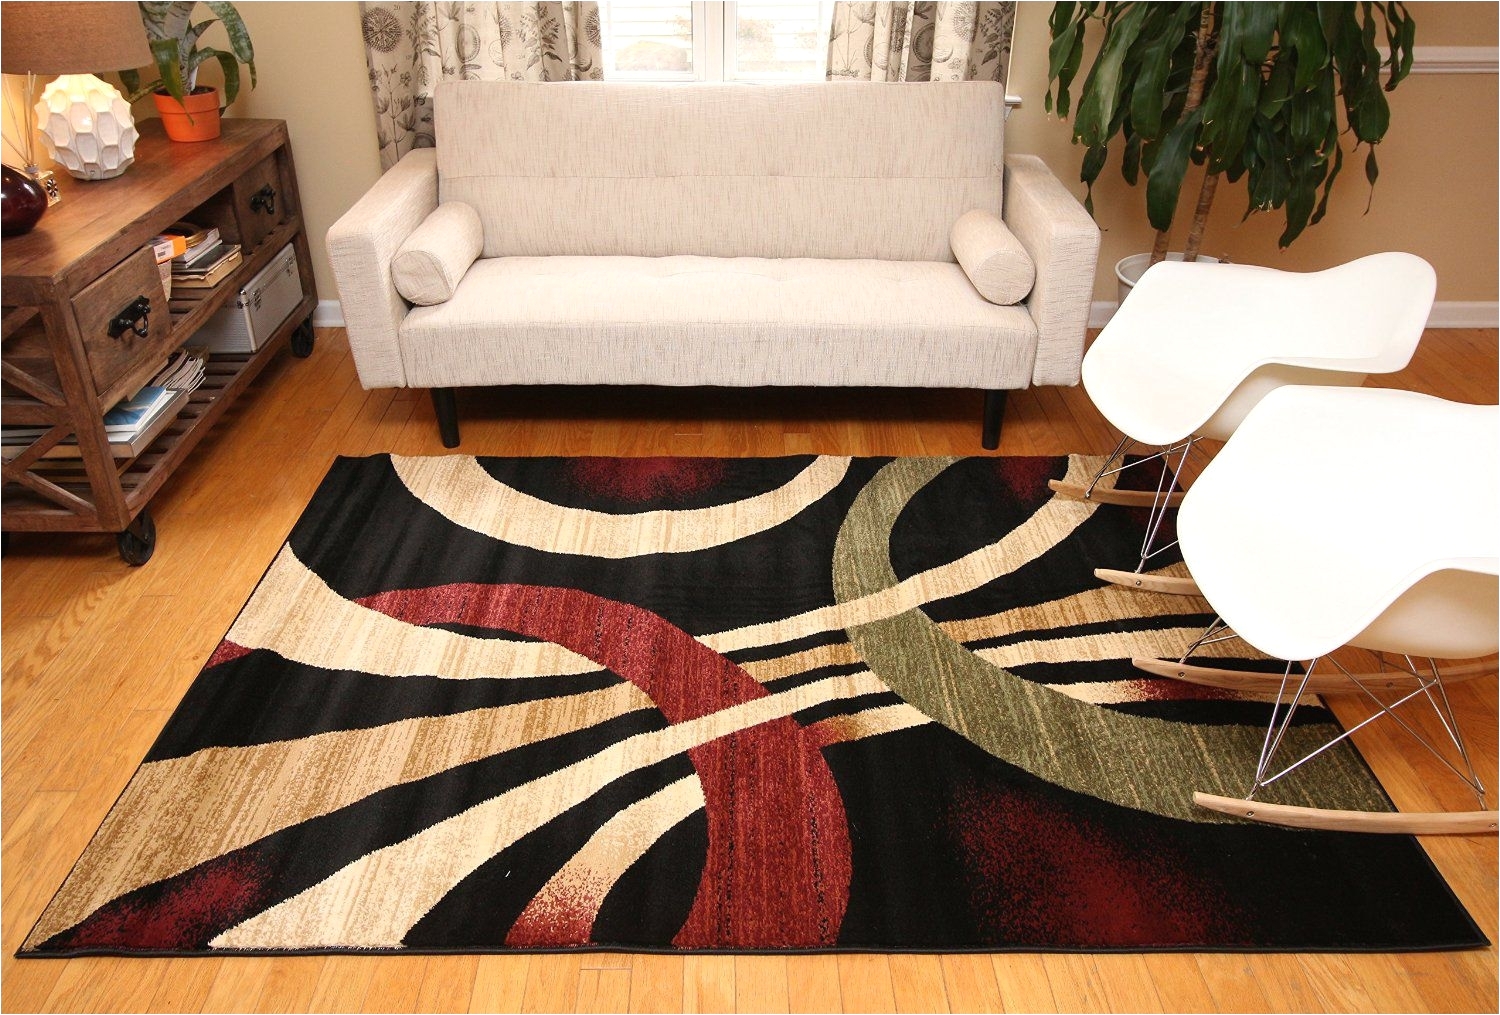 5a8 area rugs under 50 how to use an area rug